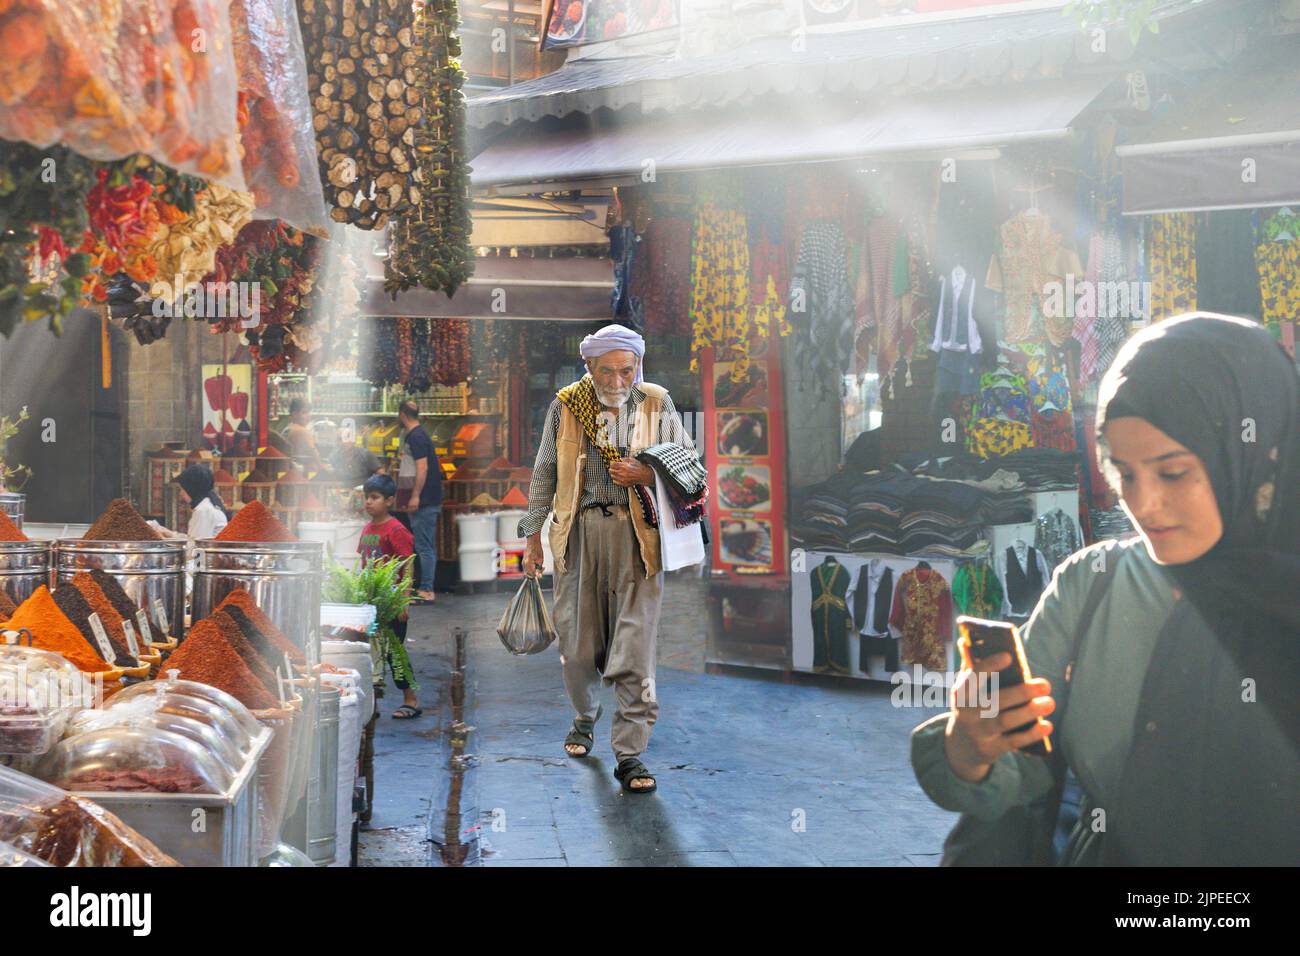 Mujer local revisando su teléfono y un hombre local con ropa tradicional caminando en el bazar a través de los rayos de luz y humo en Sanliurfa, Turquía Foto de stock